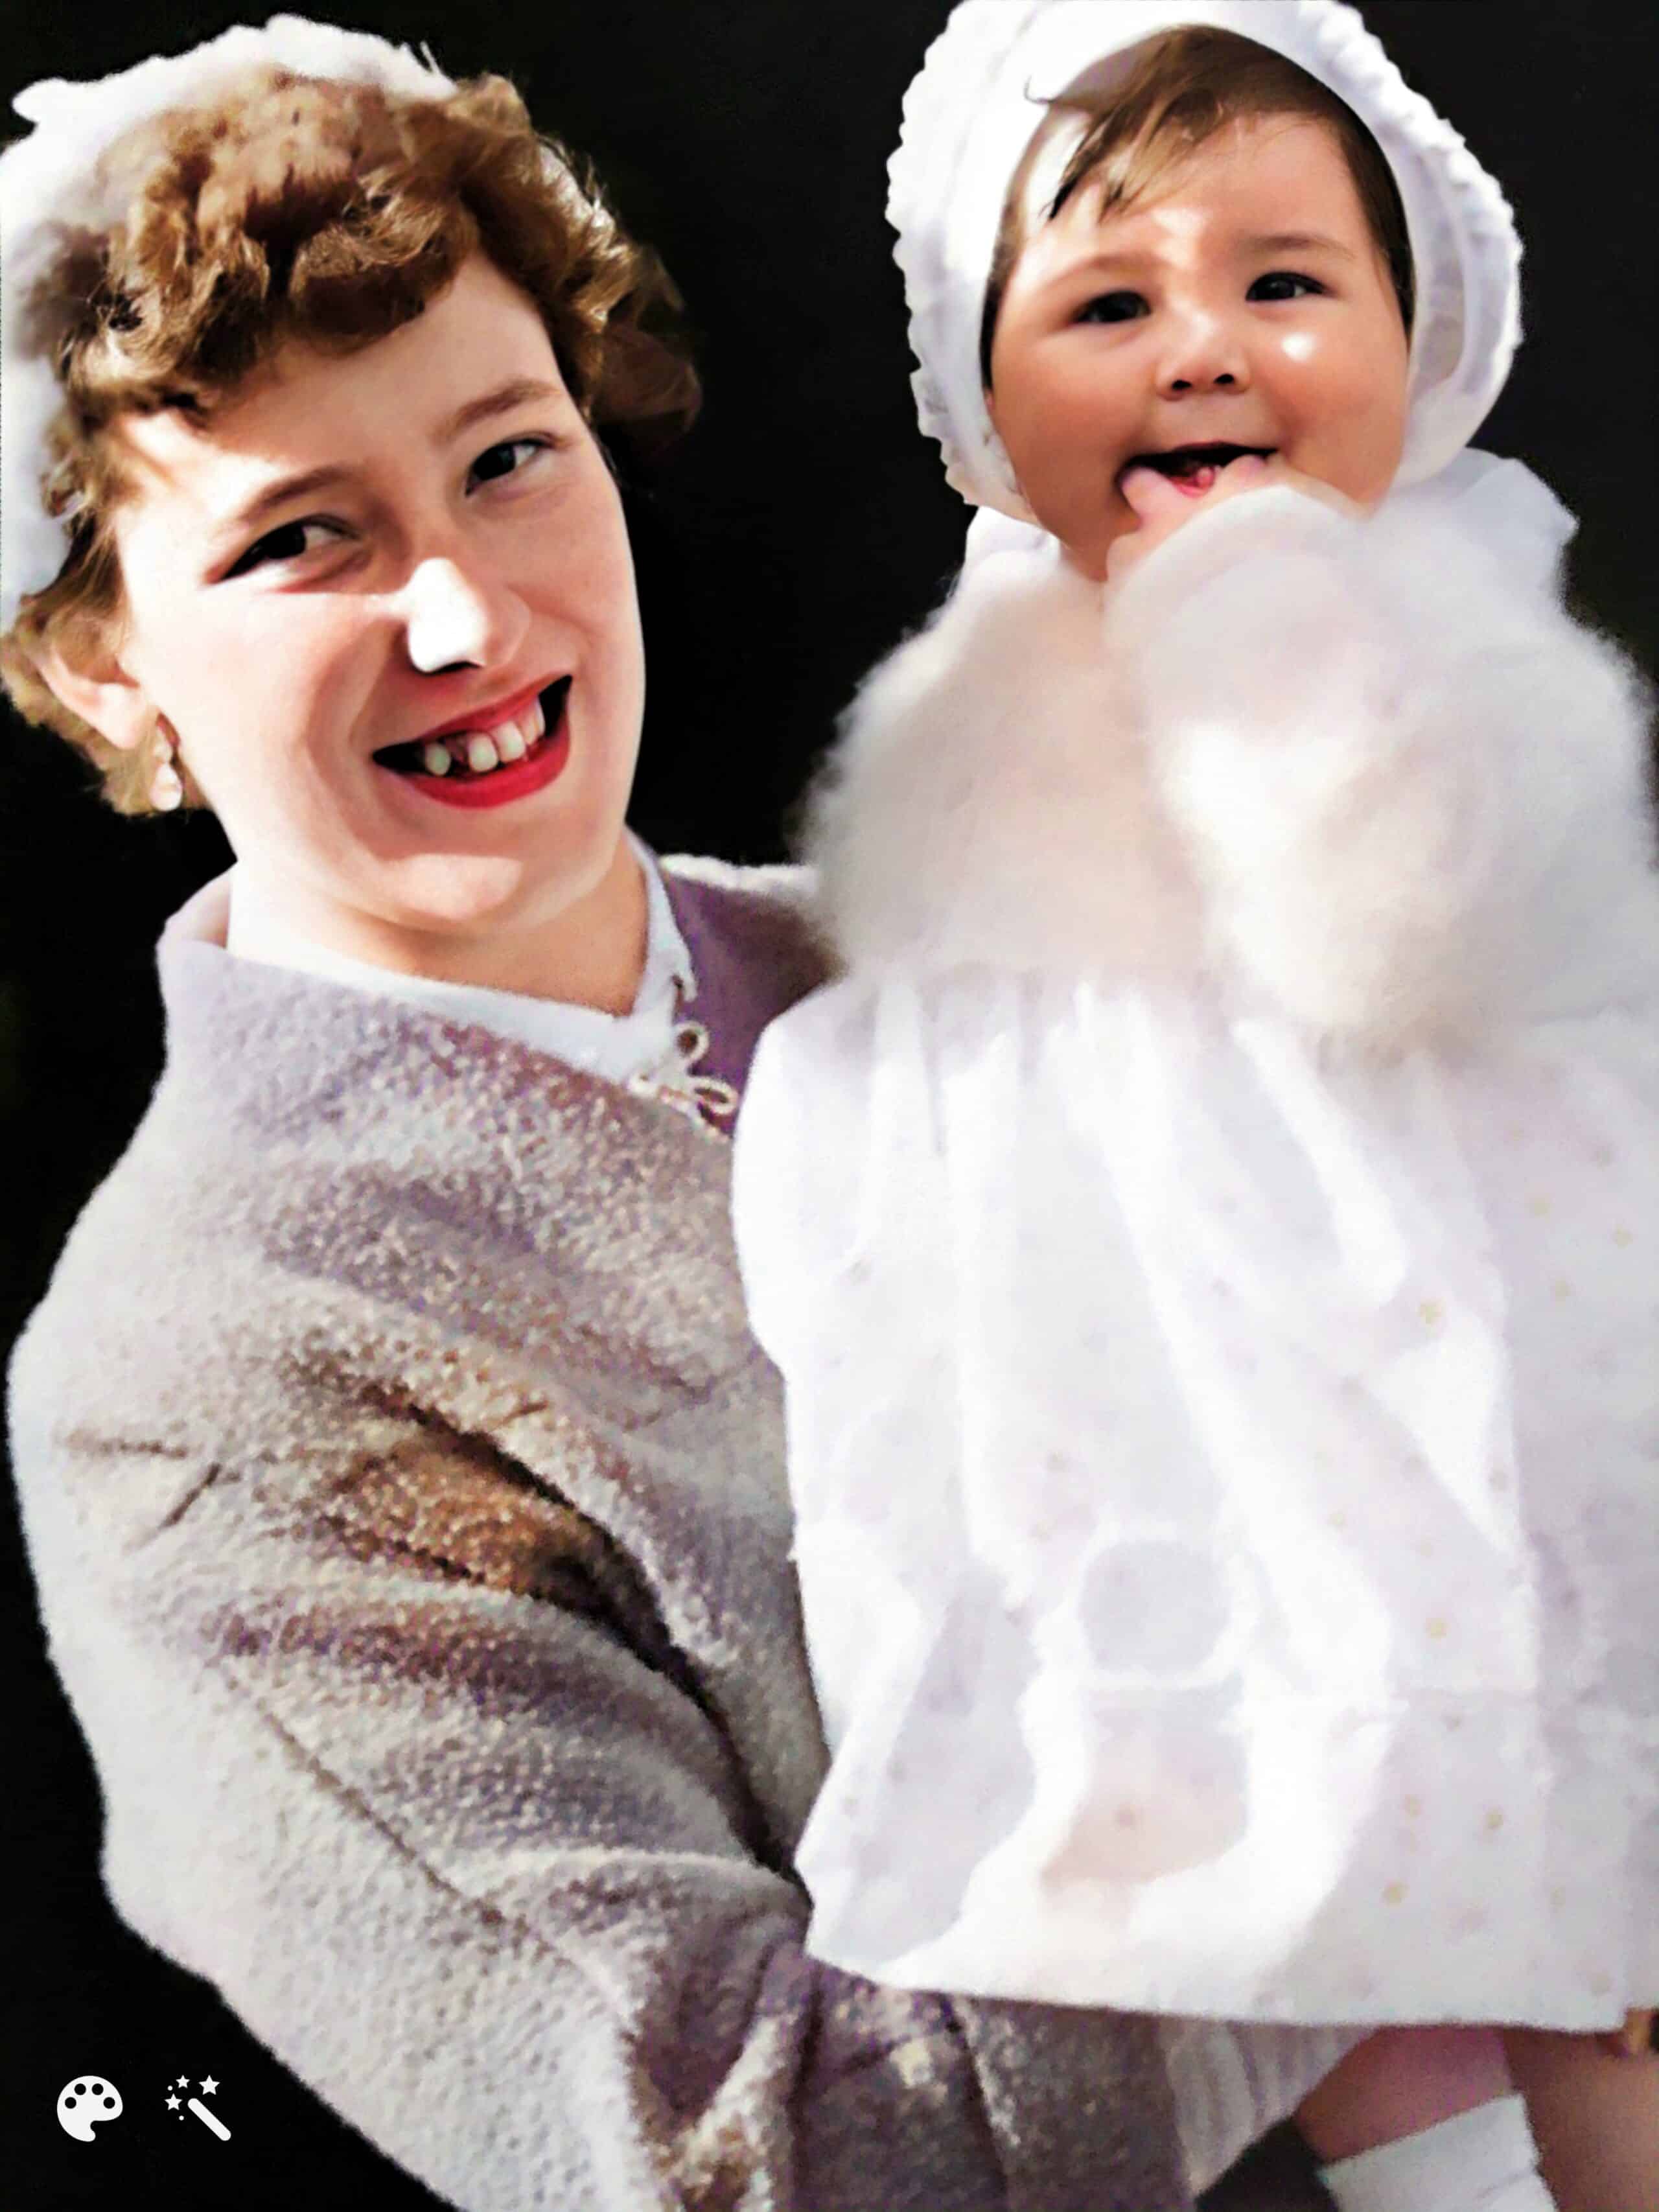 Julie Mamo som baby med hendes adoptivmor Mavis. Foto farvelagt og forbedret af MyHeritage.